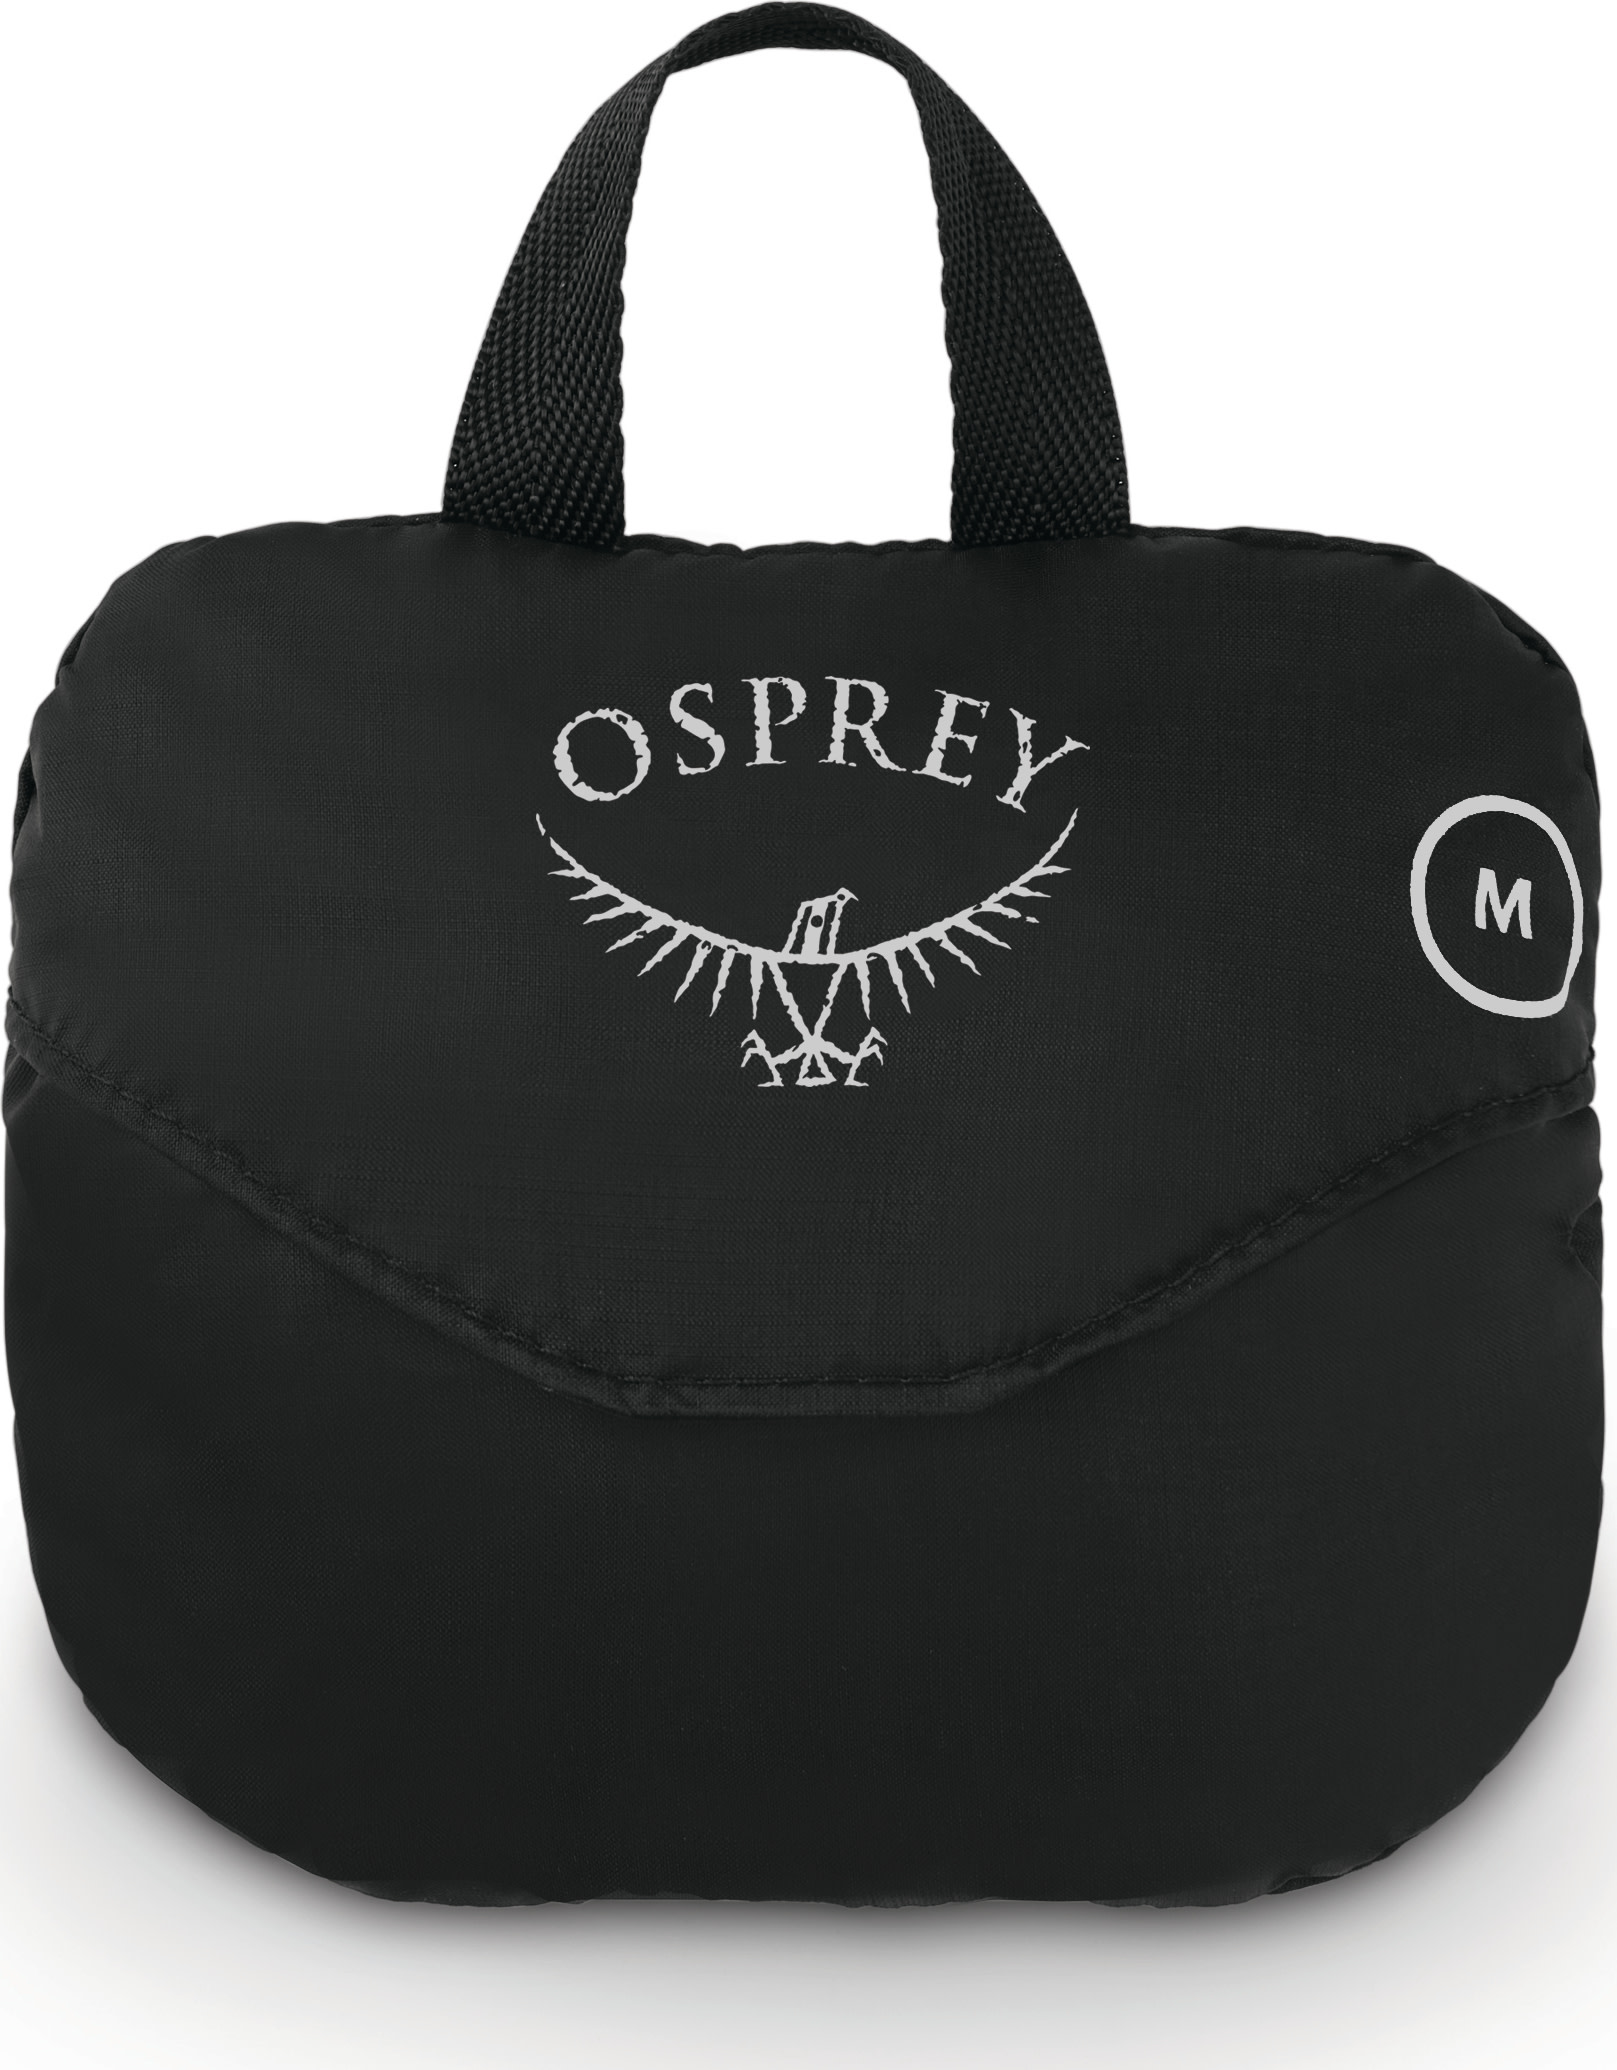 Osprey Ultralight Raincover M Black